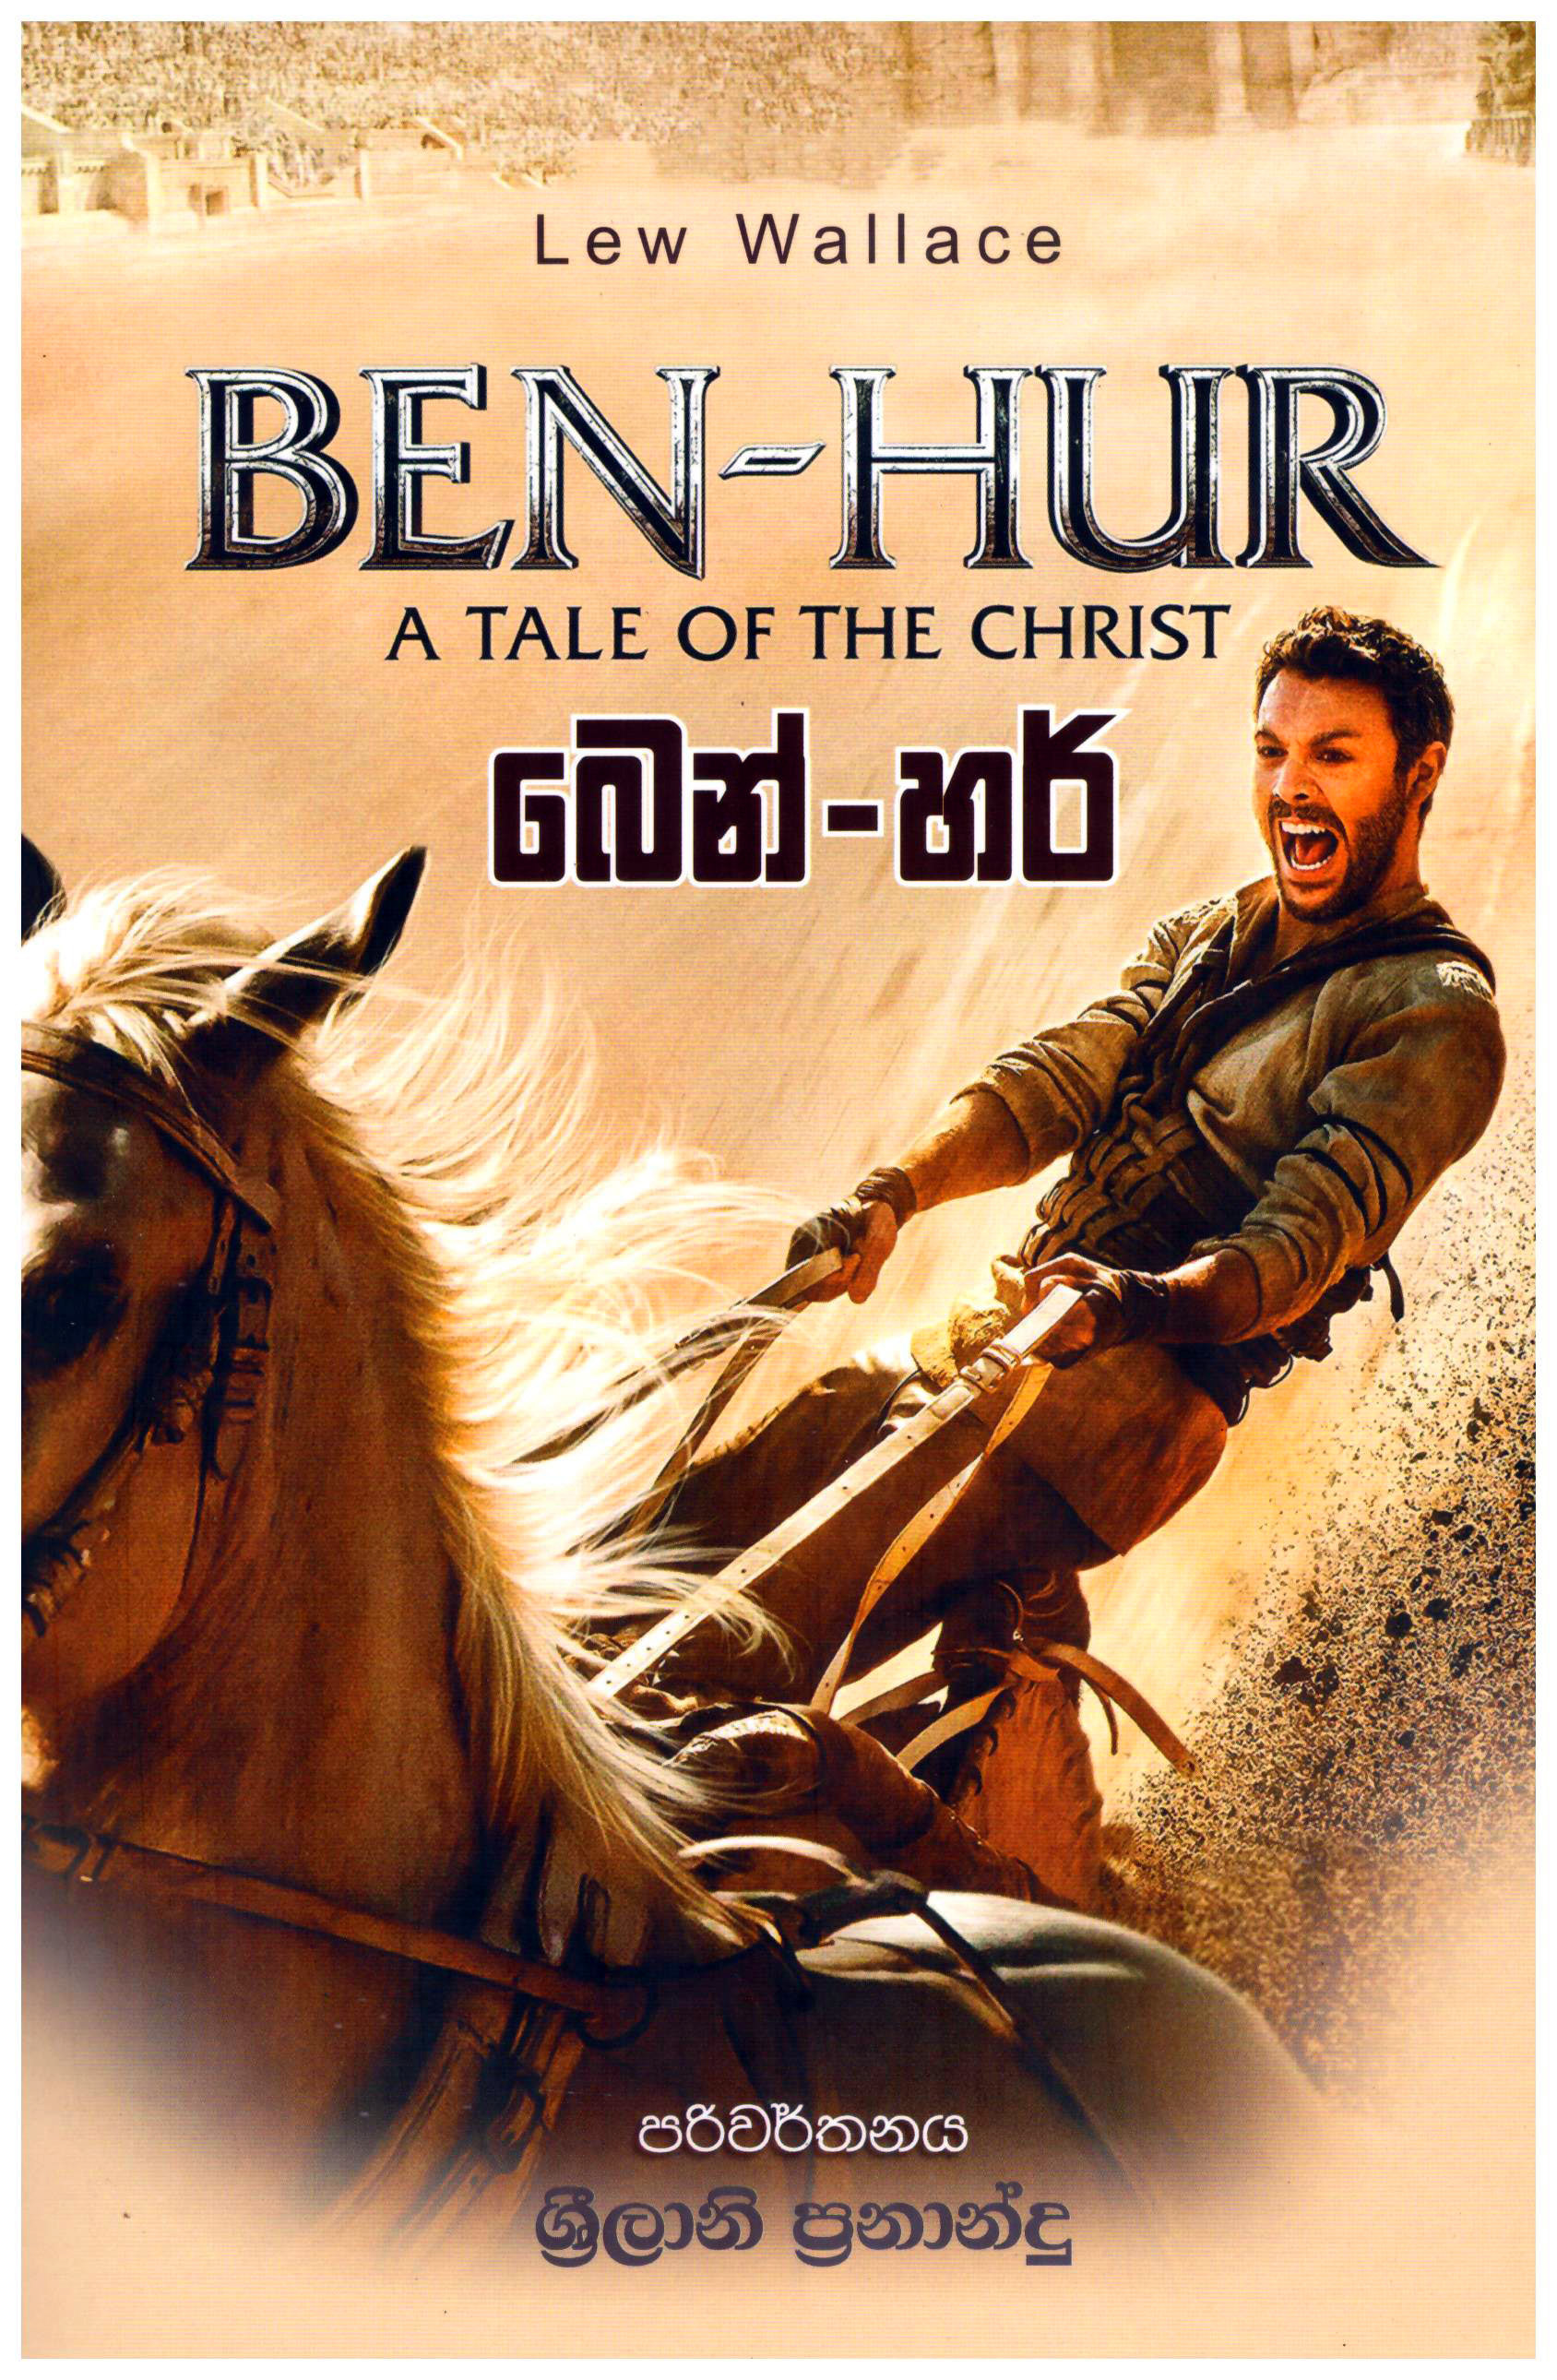 Ben - Hur (Sinhala)